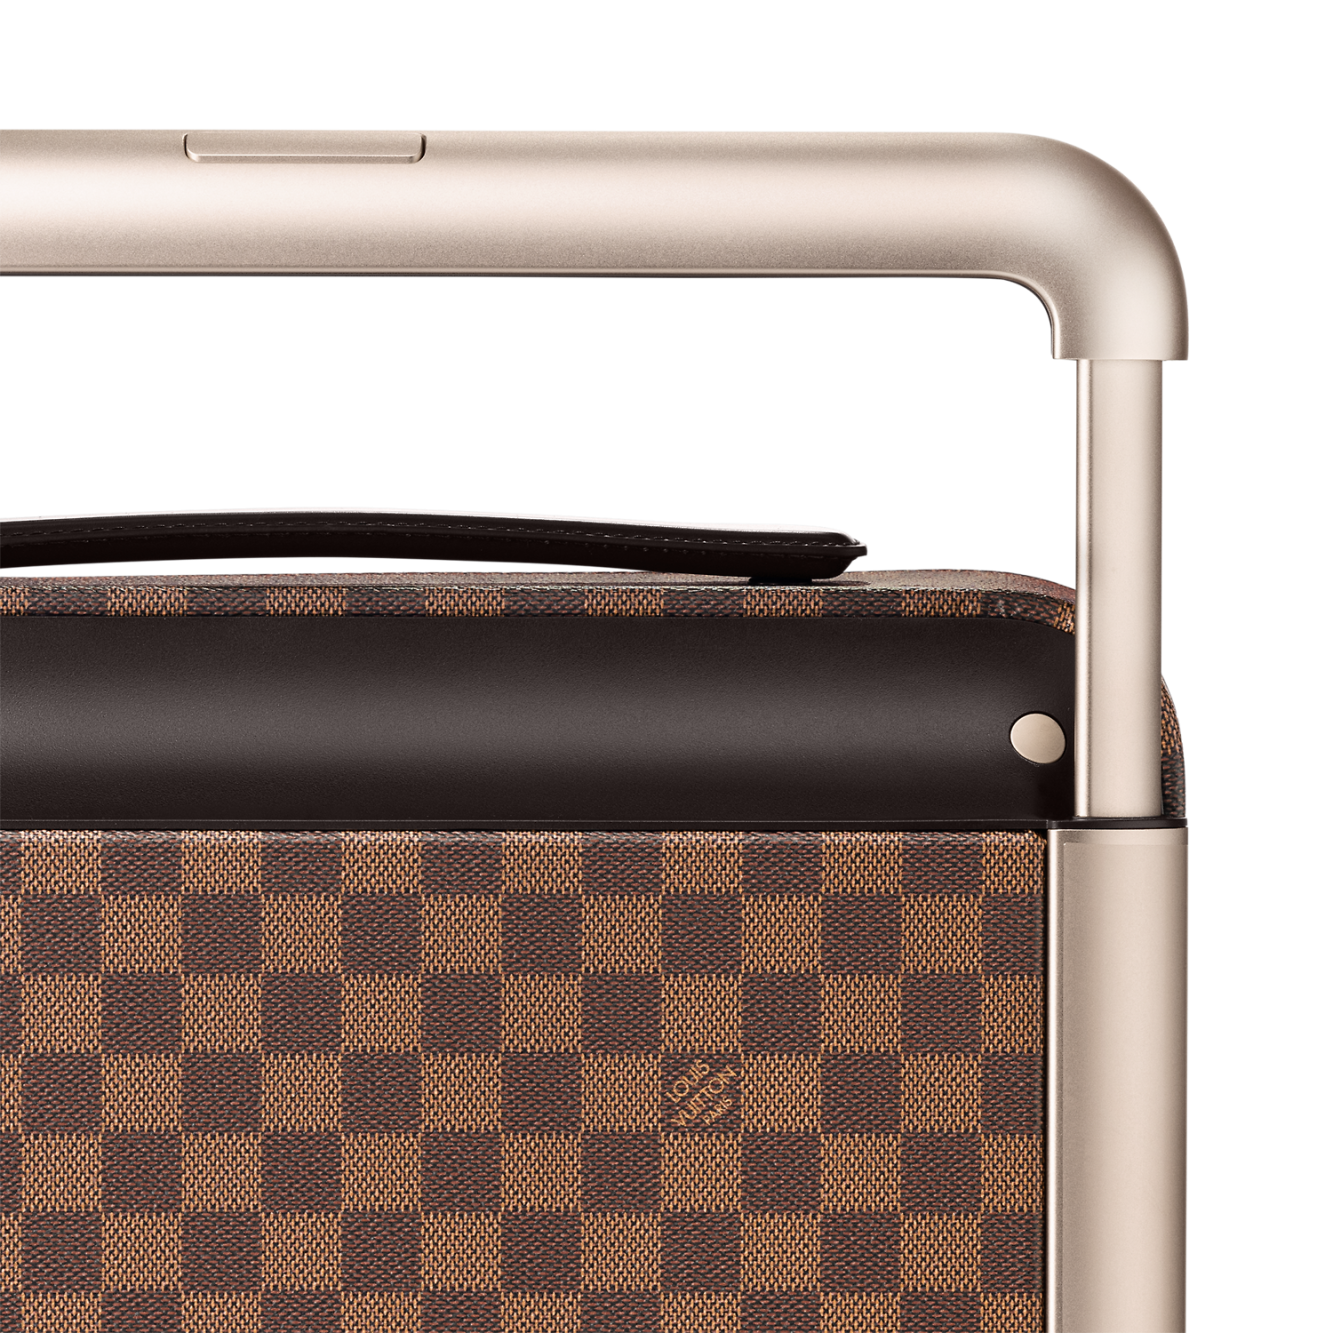 Louis Vuitton x Marc Newson Horizon 55 - Suitcases, Luggage